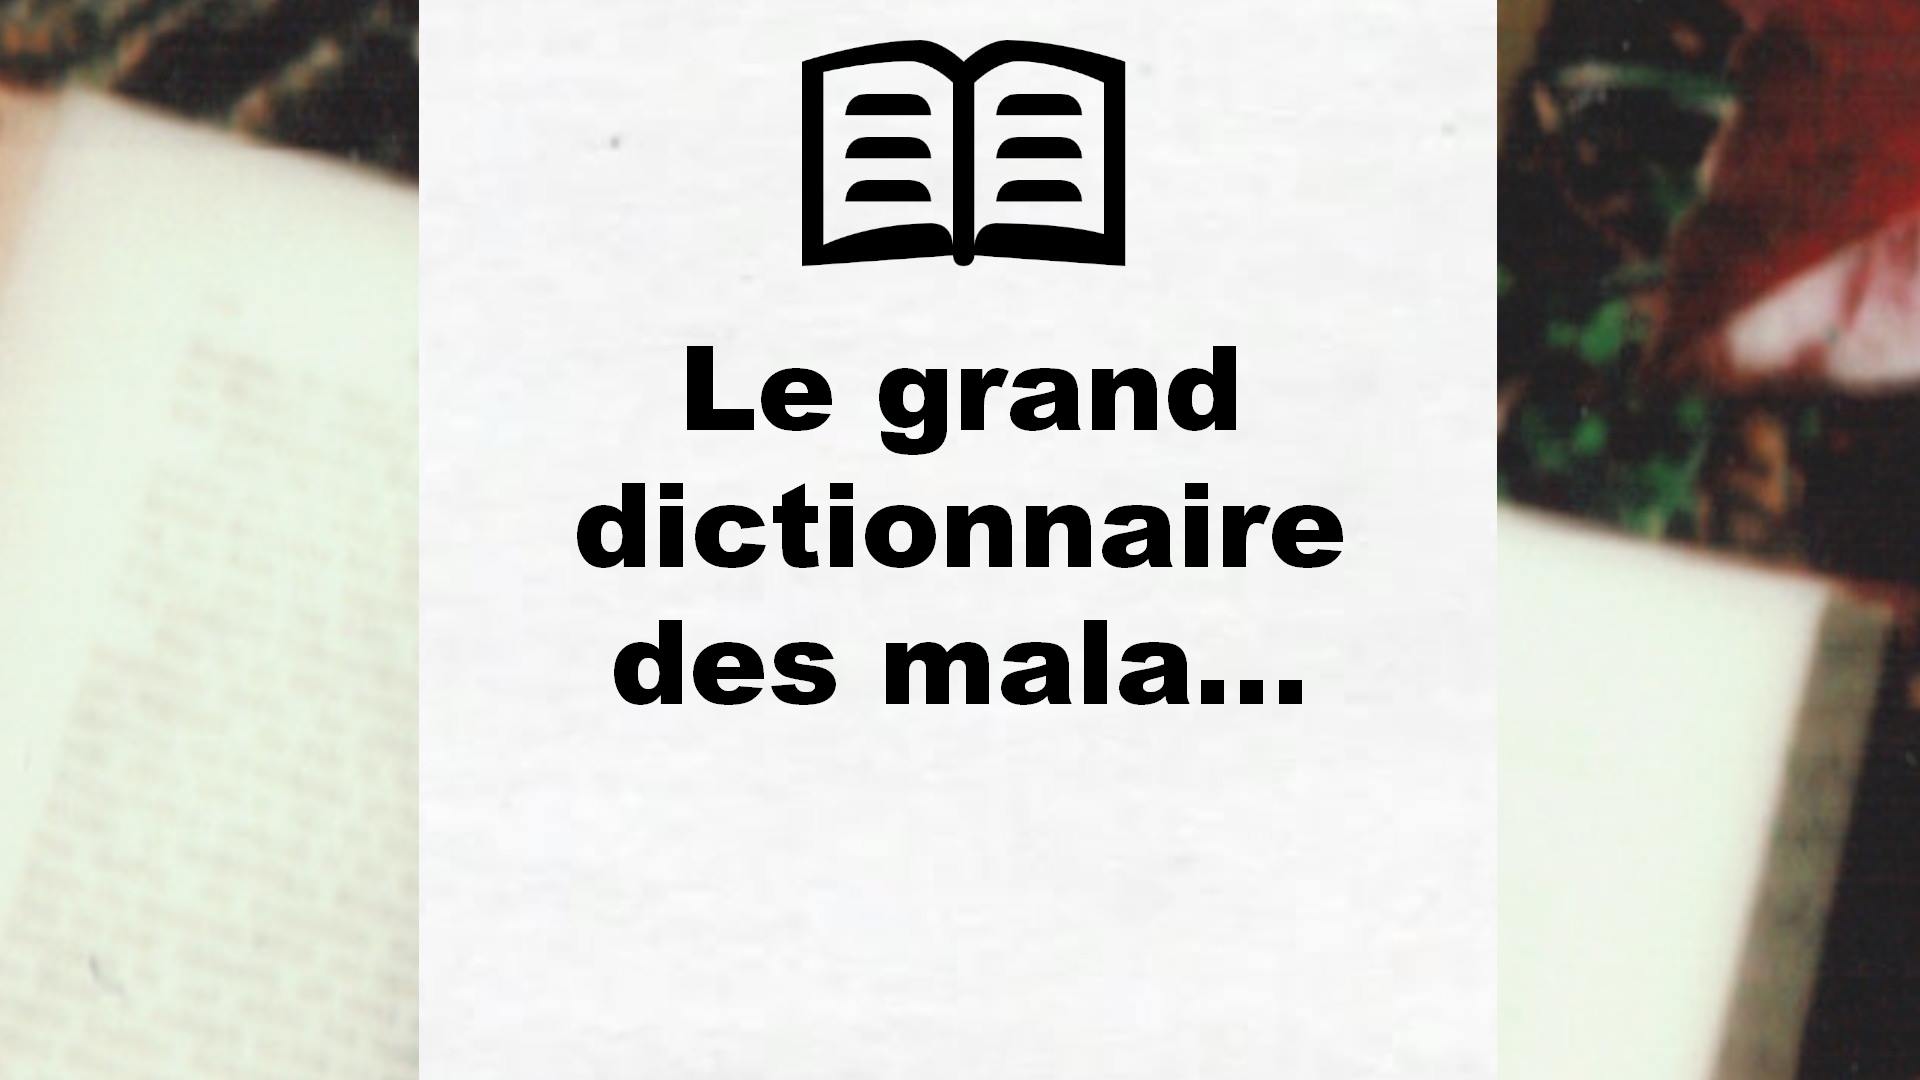 Le grand dictionnaire des mala… – Critique